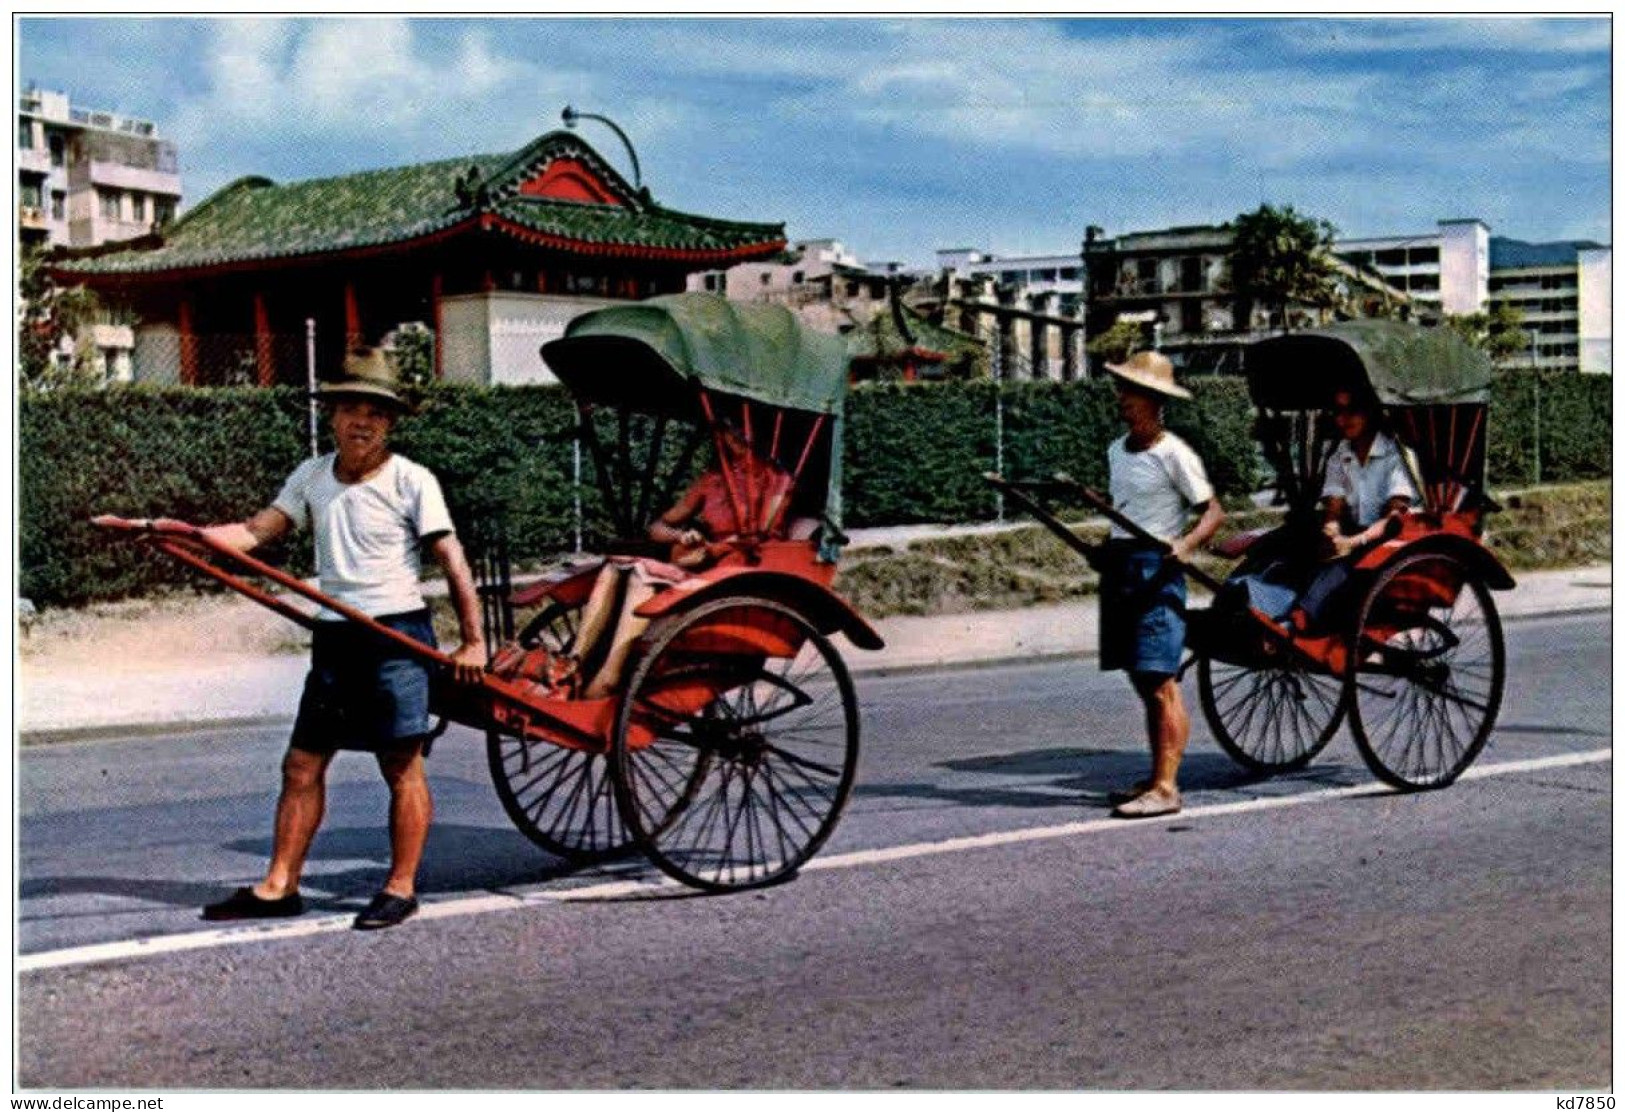 Hong Kong - Rickshaws - China (Hong Kong)